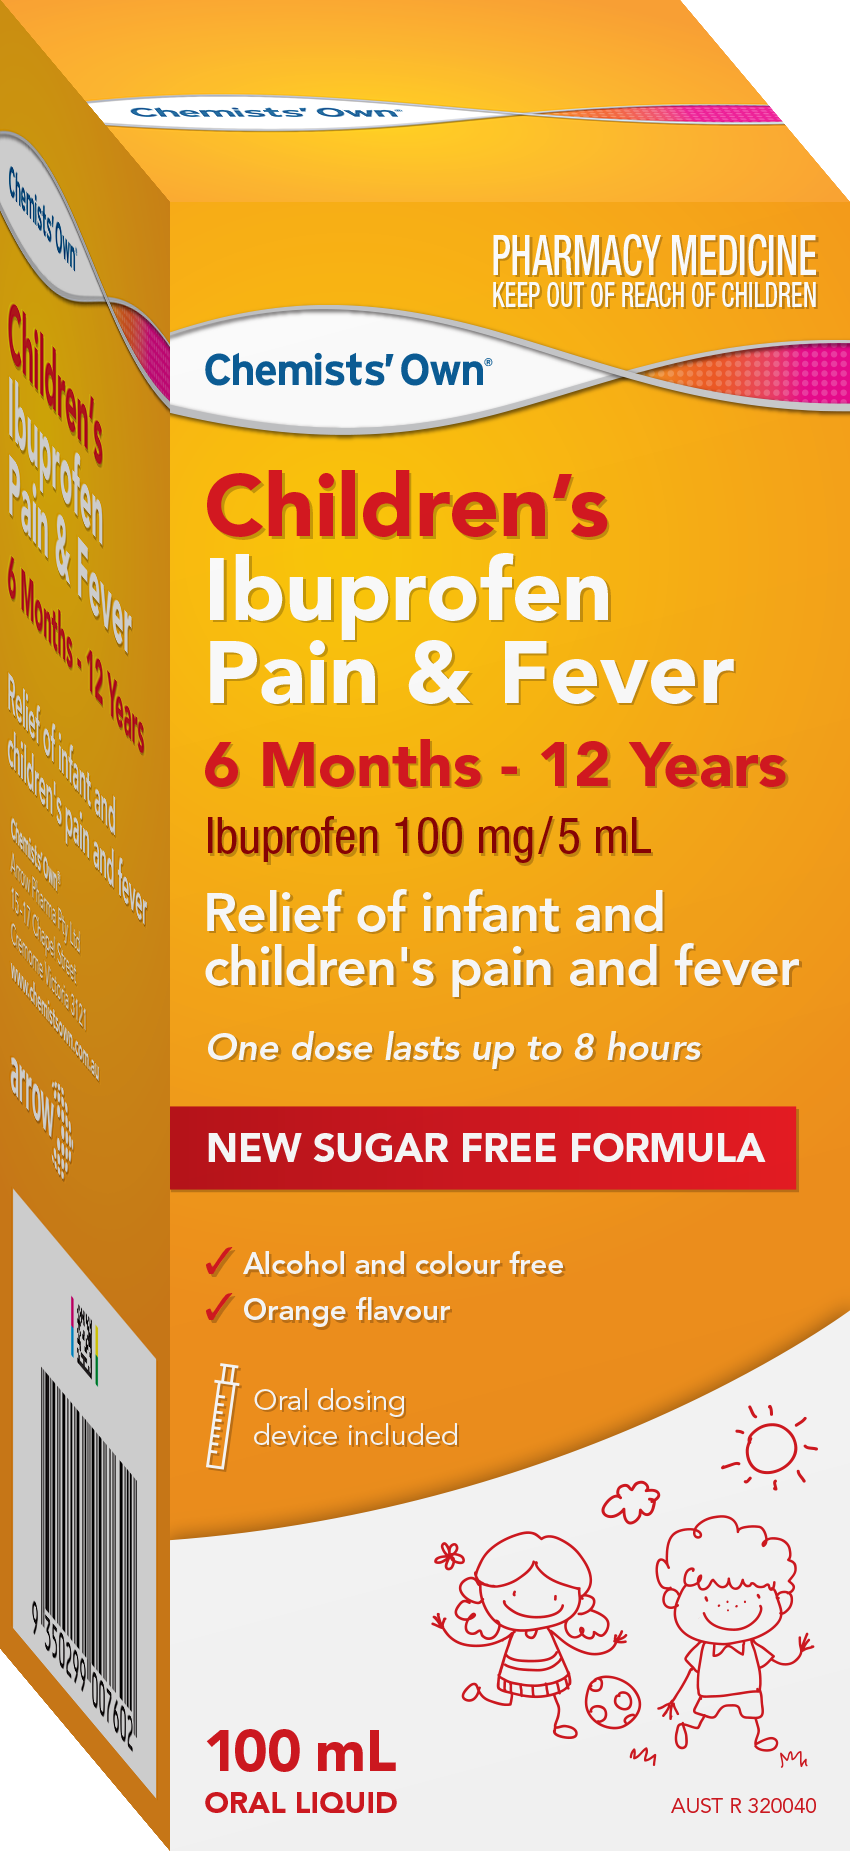 CO Children's Ibuprofen Pain & Fever 100mL